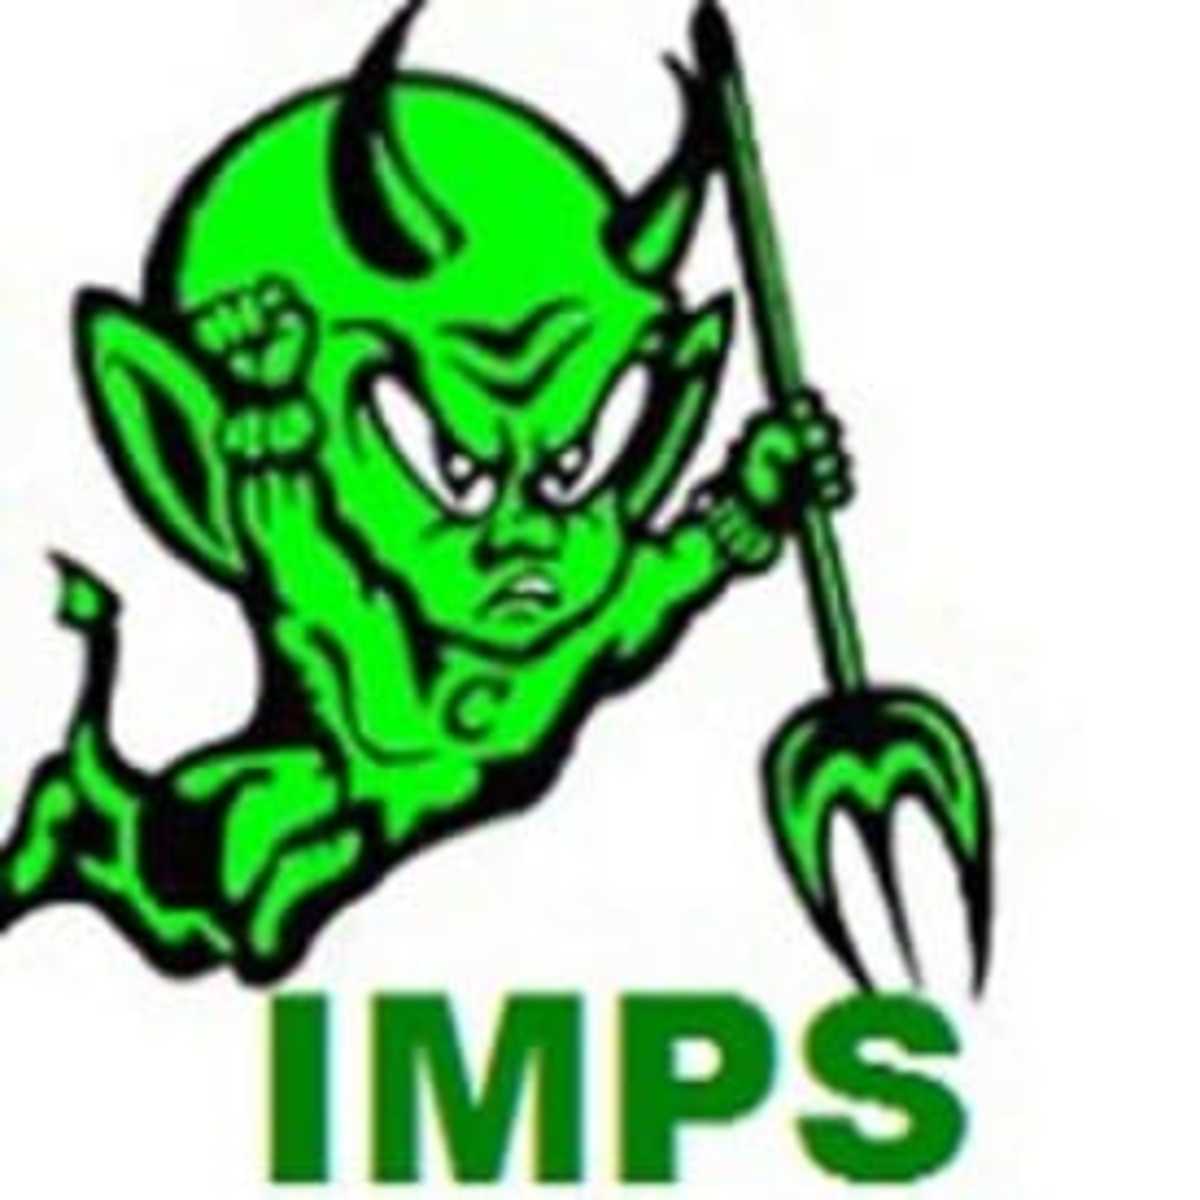 Imps